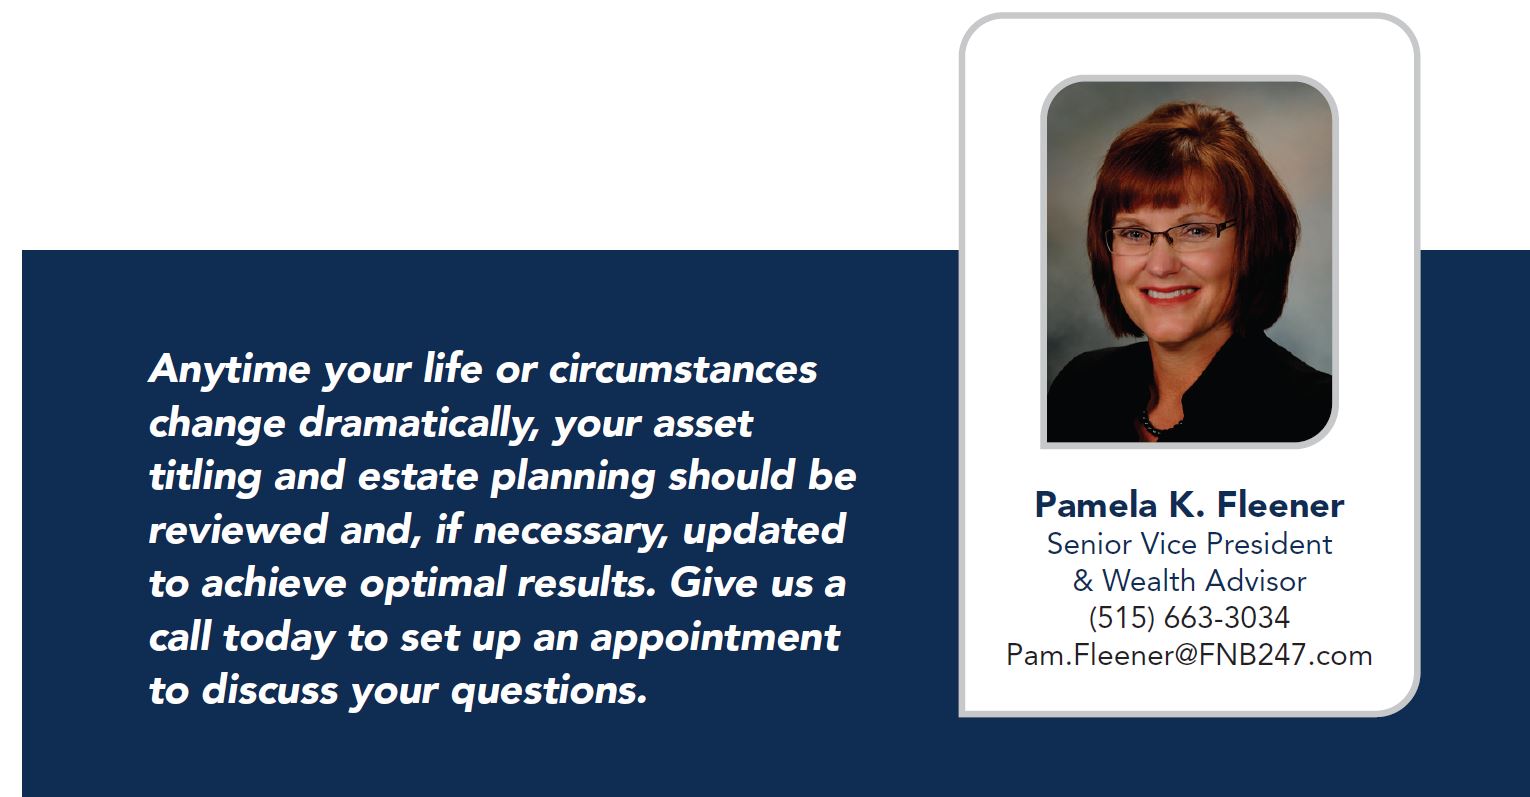 Pam Fleener's Contact Info